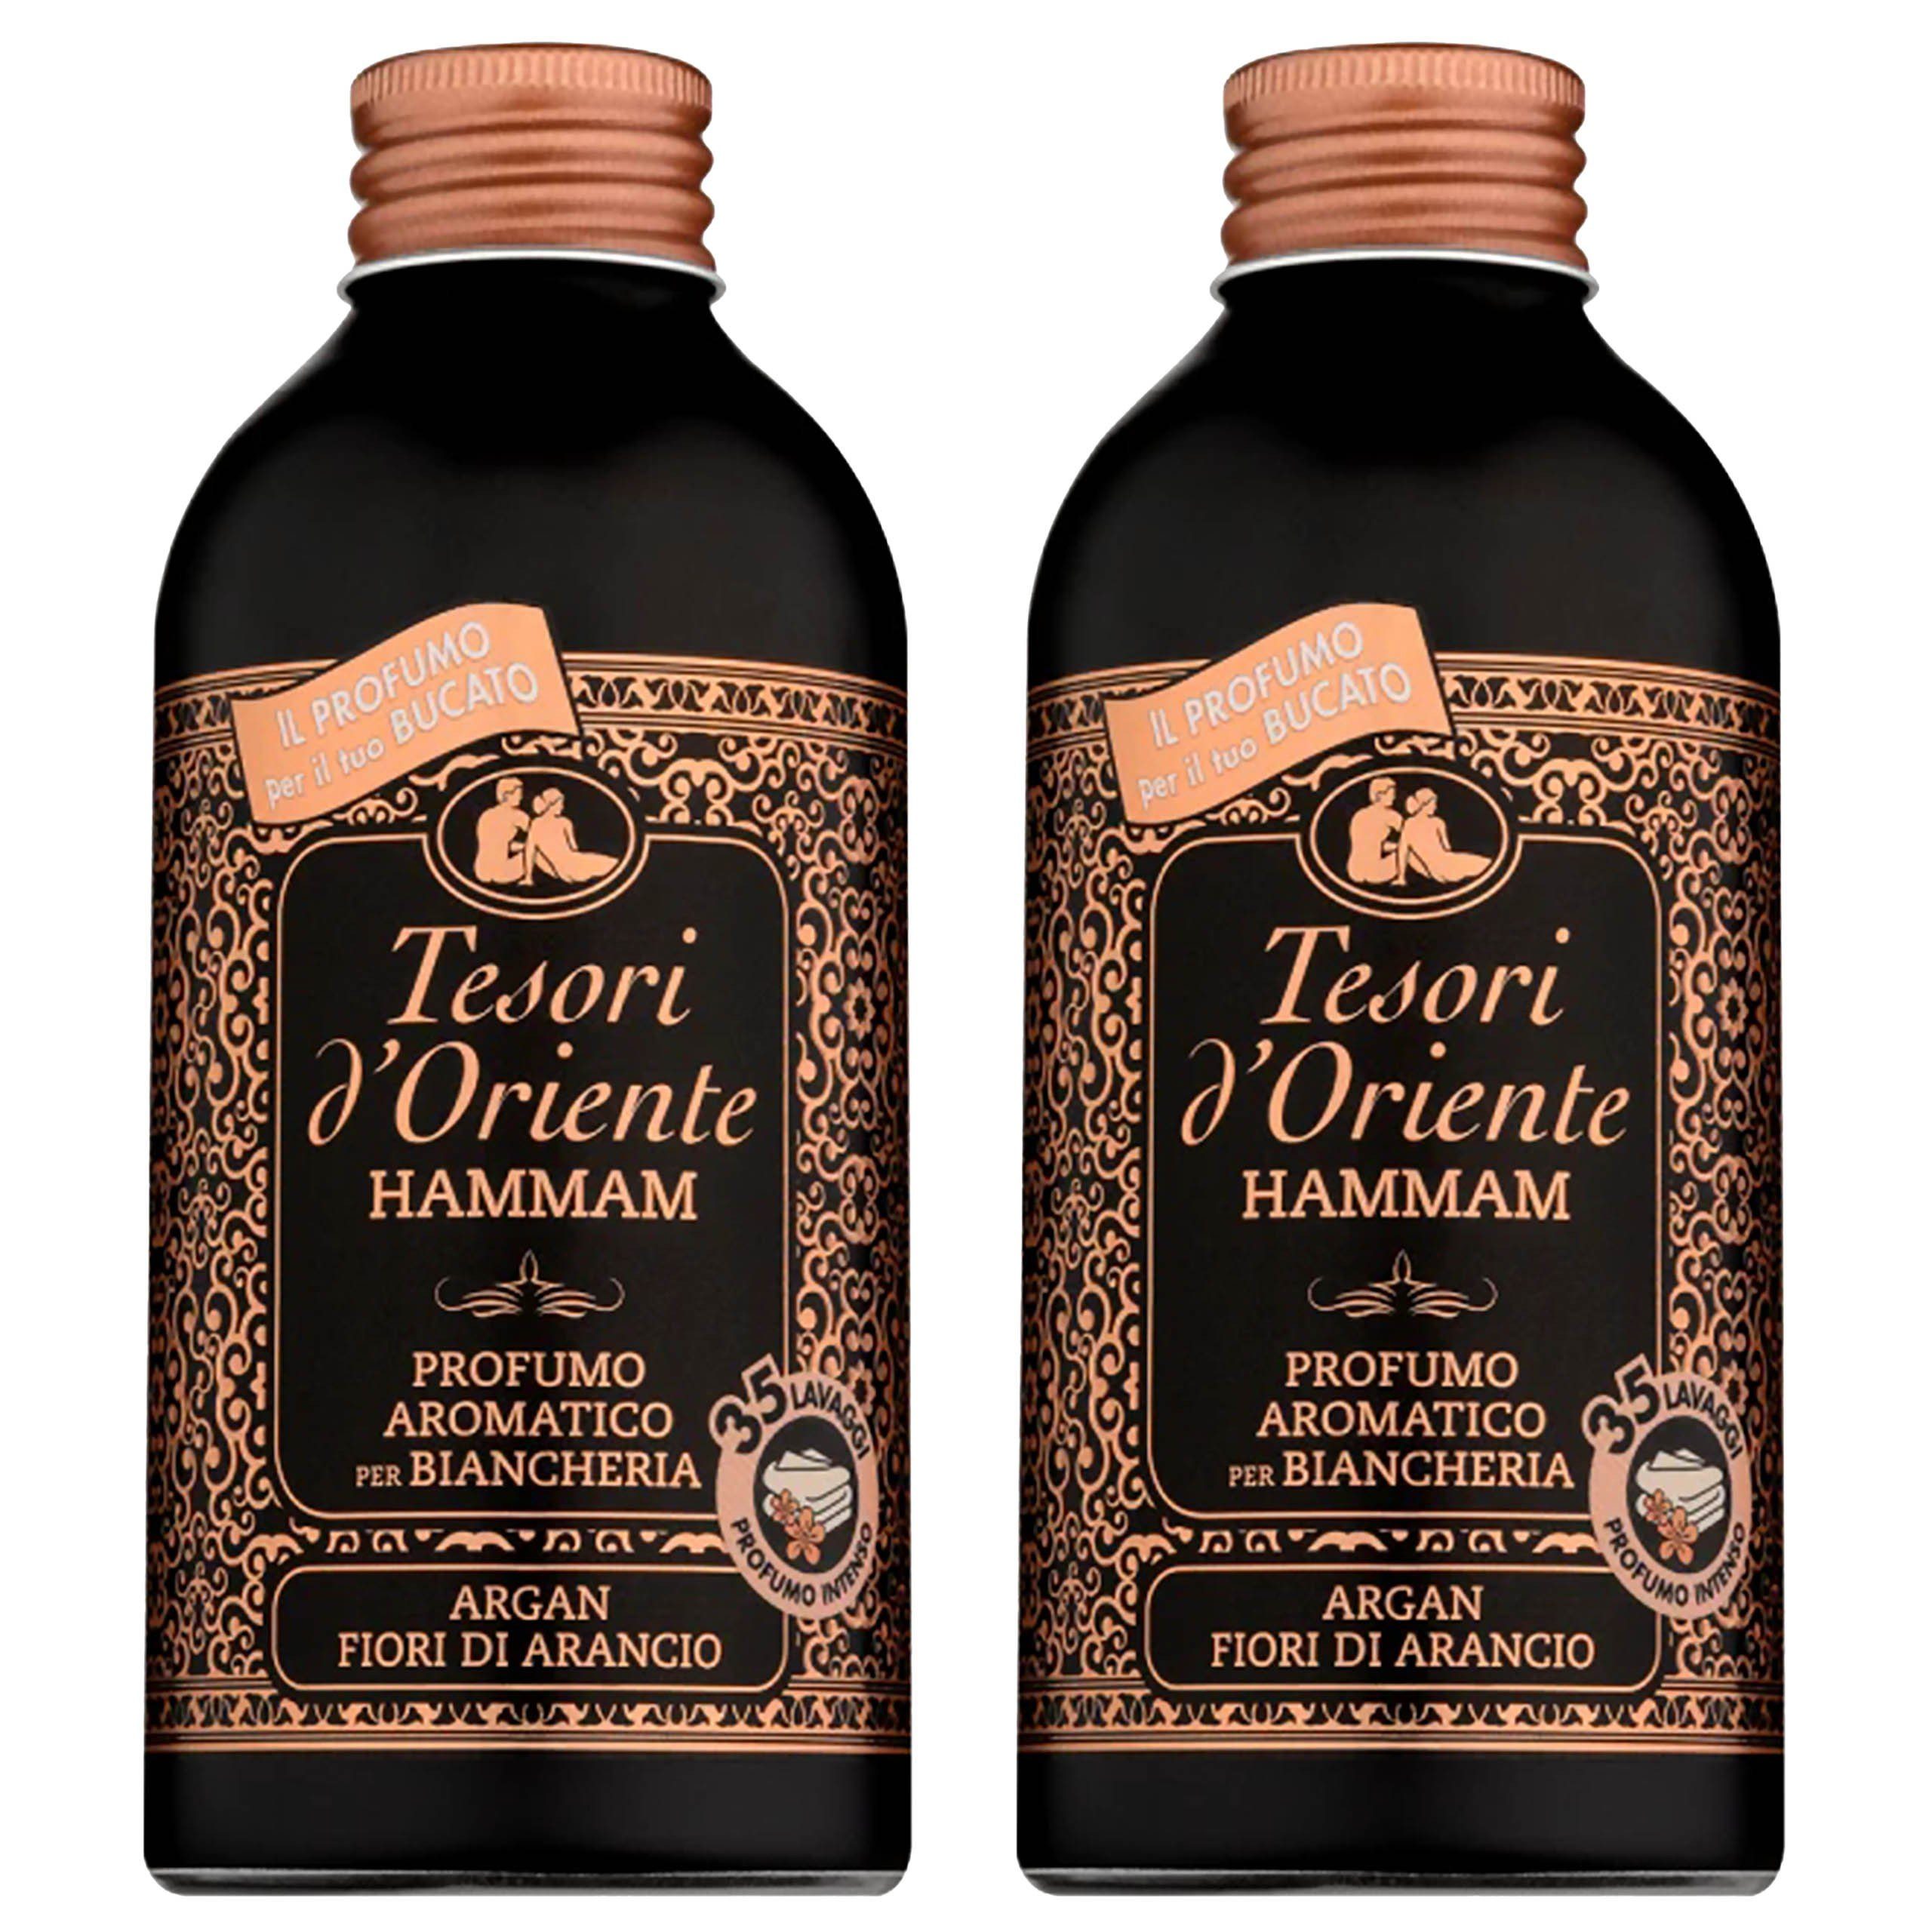 Tesori d´Oriente Wäscheparfüm Tesori d'Oriente Hammam Wascheparfüm 250 ml x2